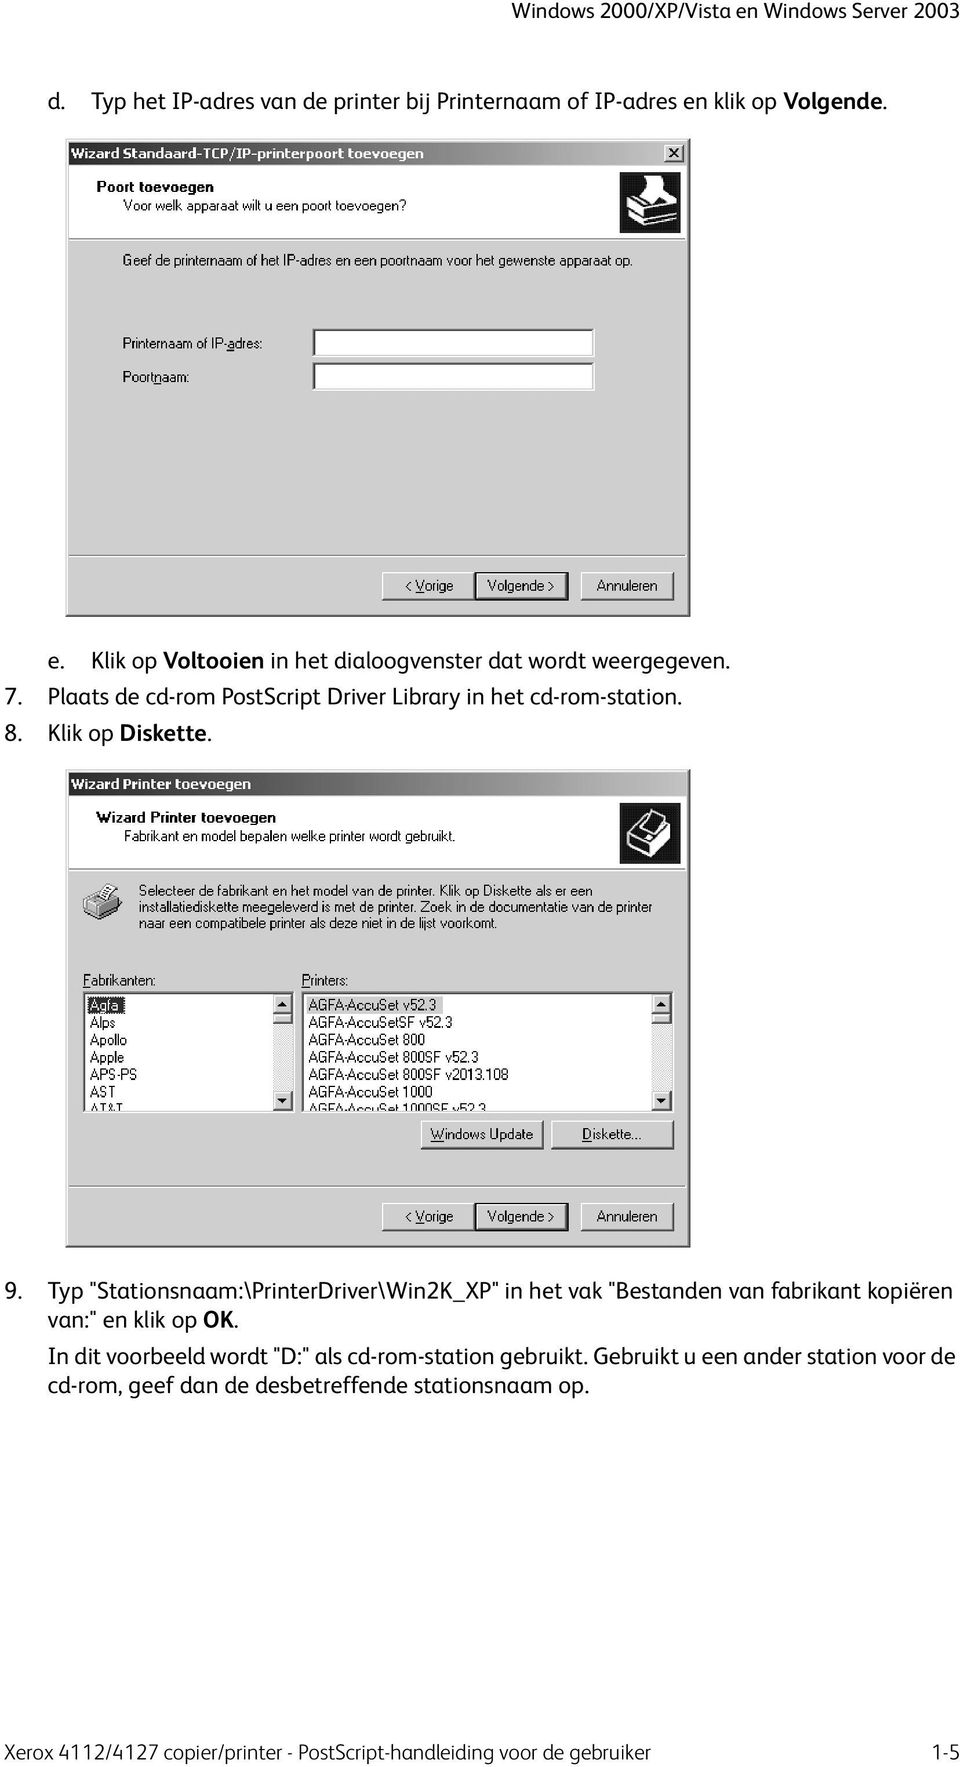 Typ "Stationsnaam:\PrinterDriver\Win2K_XP" in het vak "Bestanden van fabrikant kopiëren van:" en klik op OK.